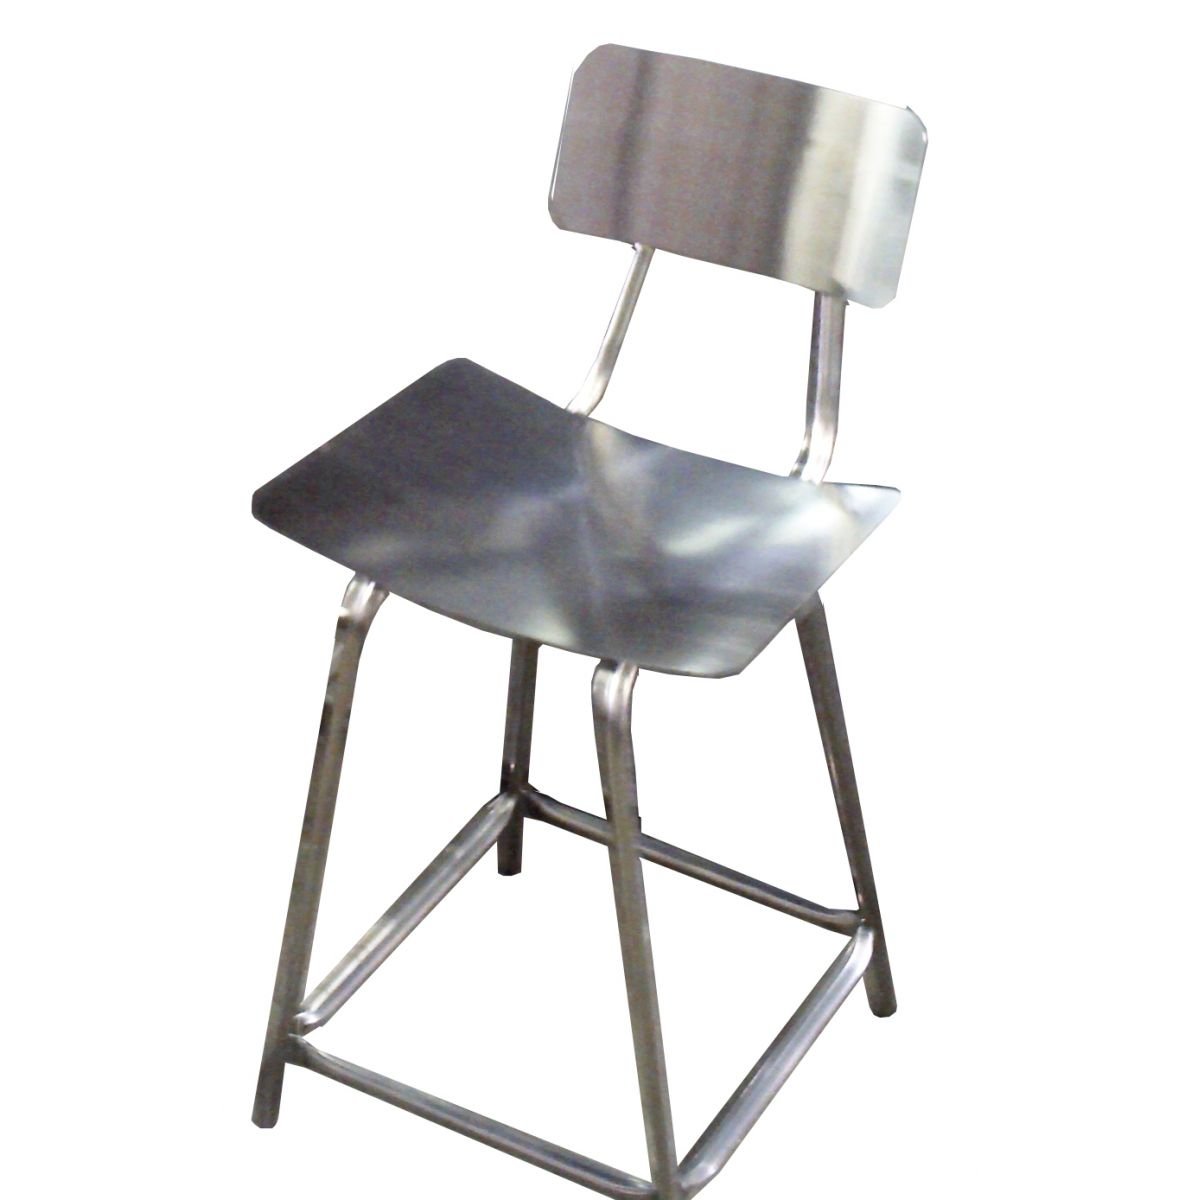 Cadeira fixa com encosto em aço inox - Altura total 68cm